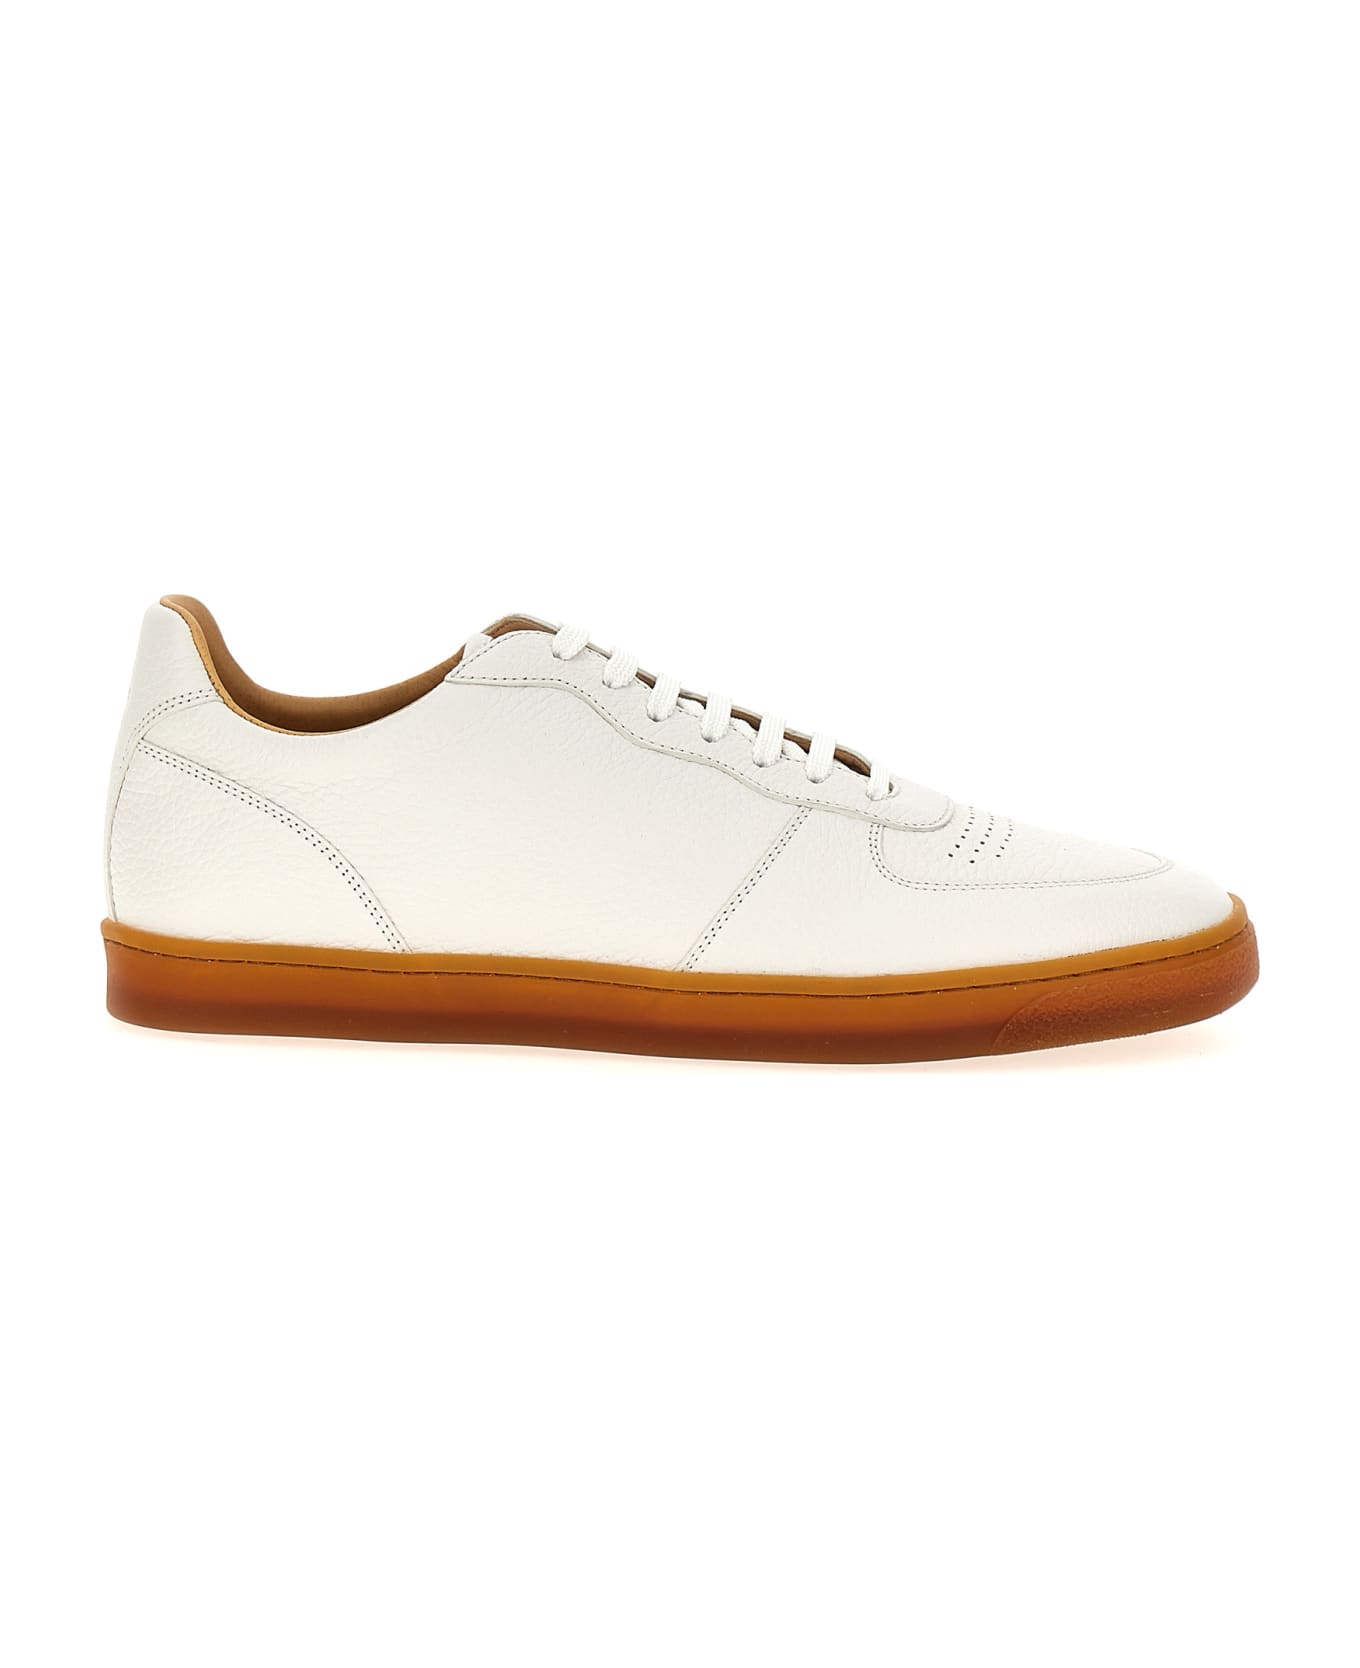 Brunello Cucinelli Hybrid Sneakers - White